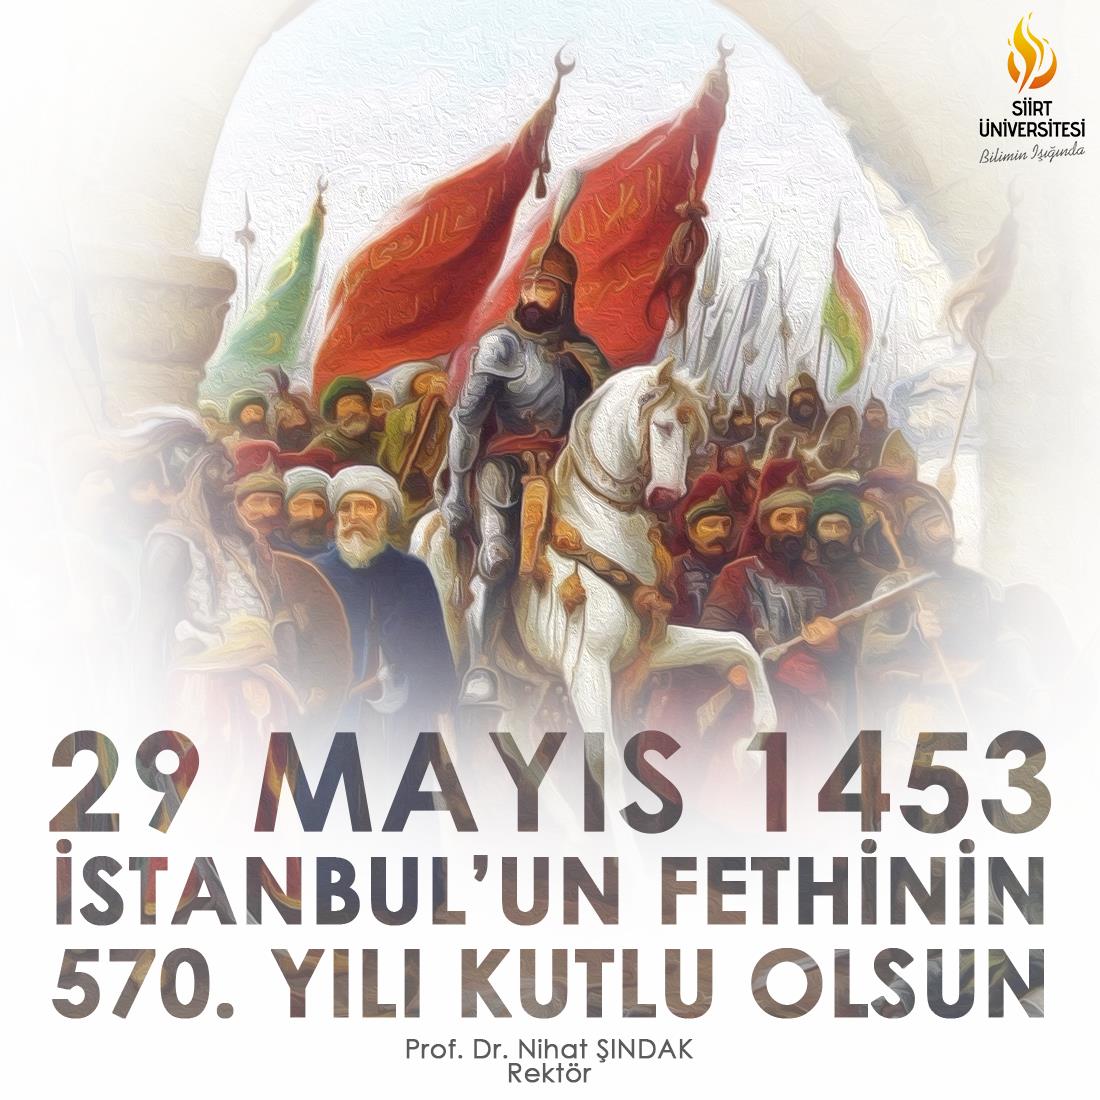 İstanbulun Fethinin 570. Yılı Kutlu Olsun!